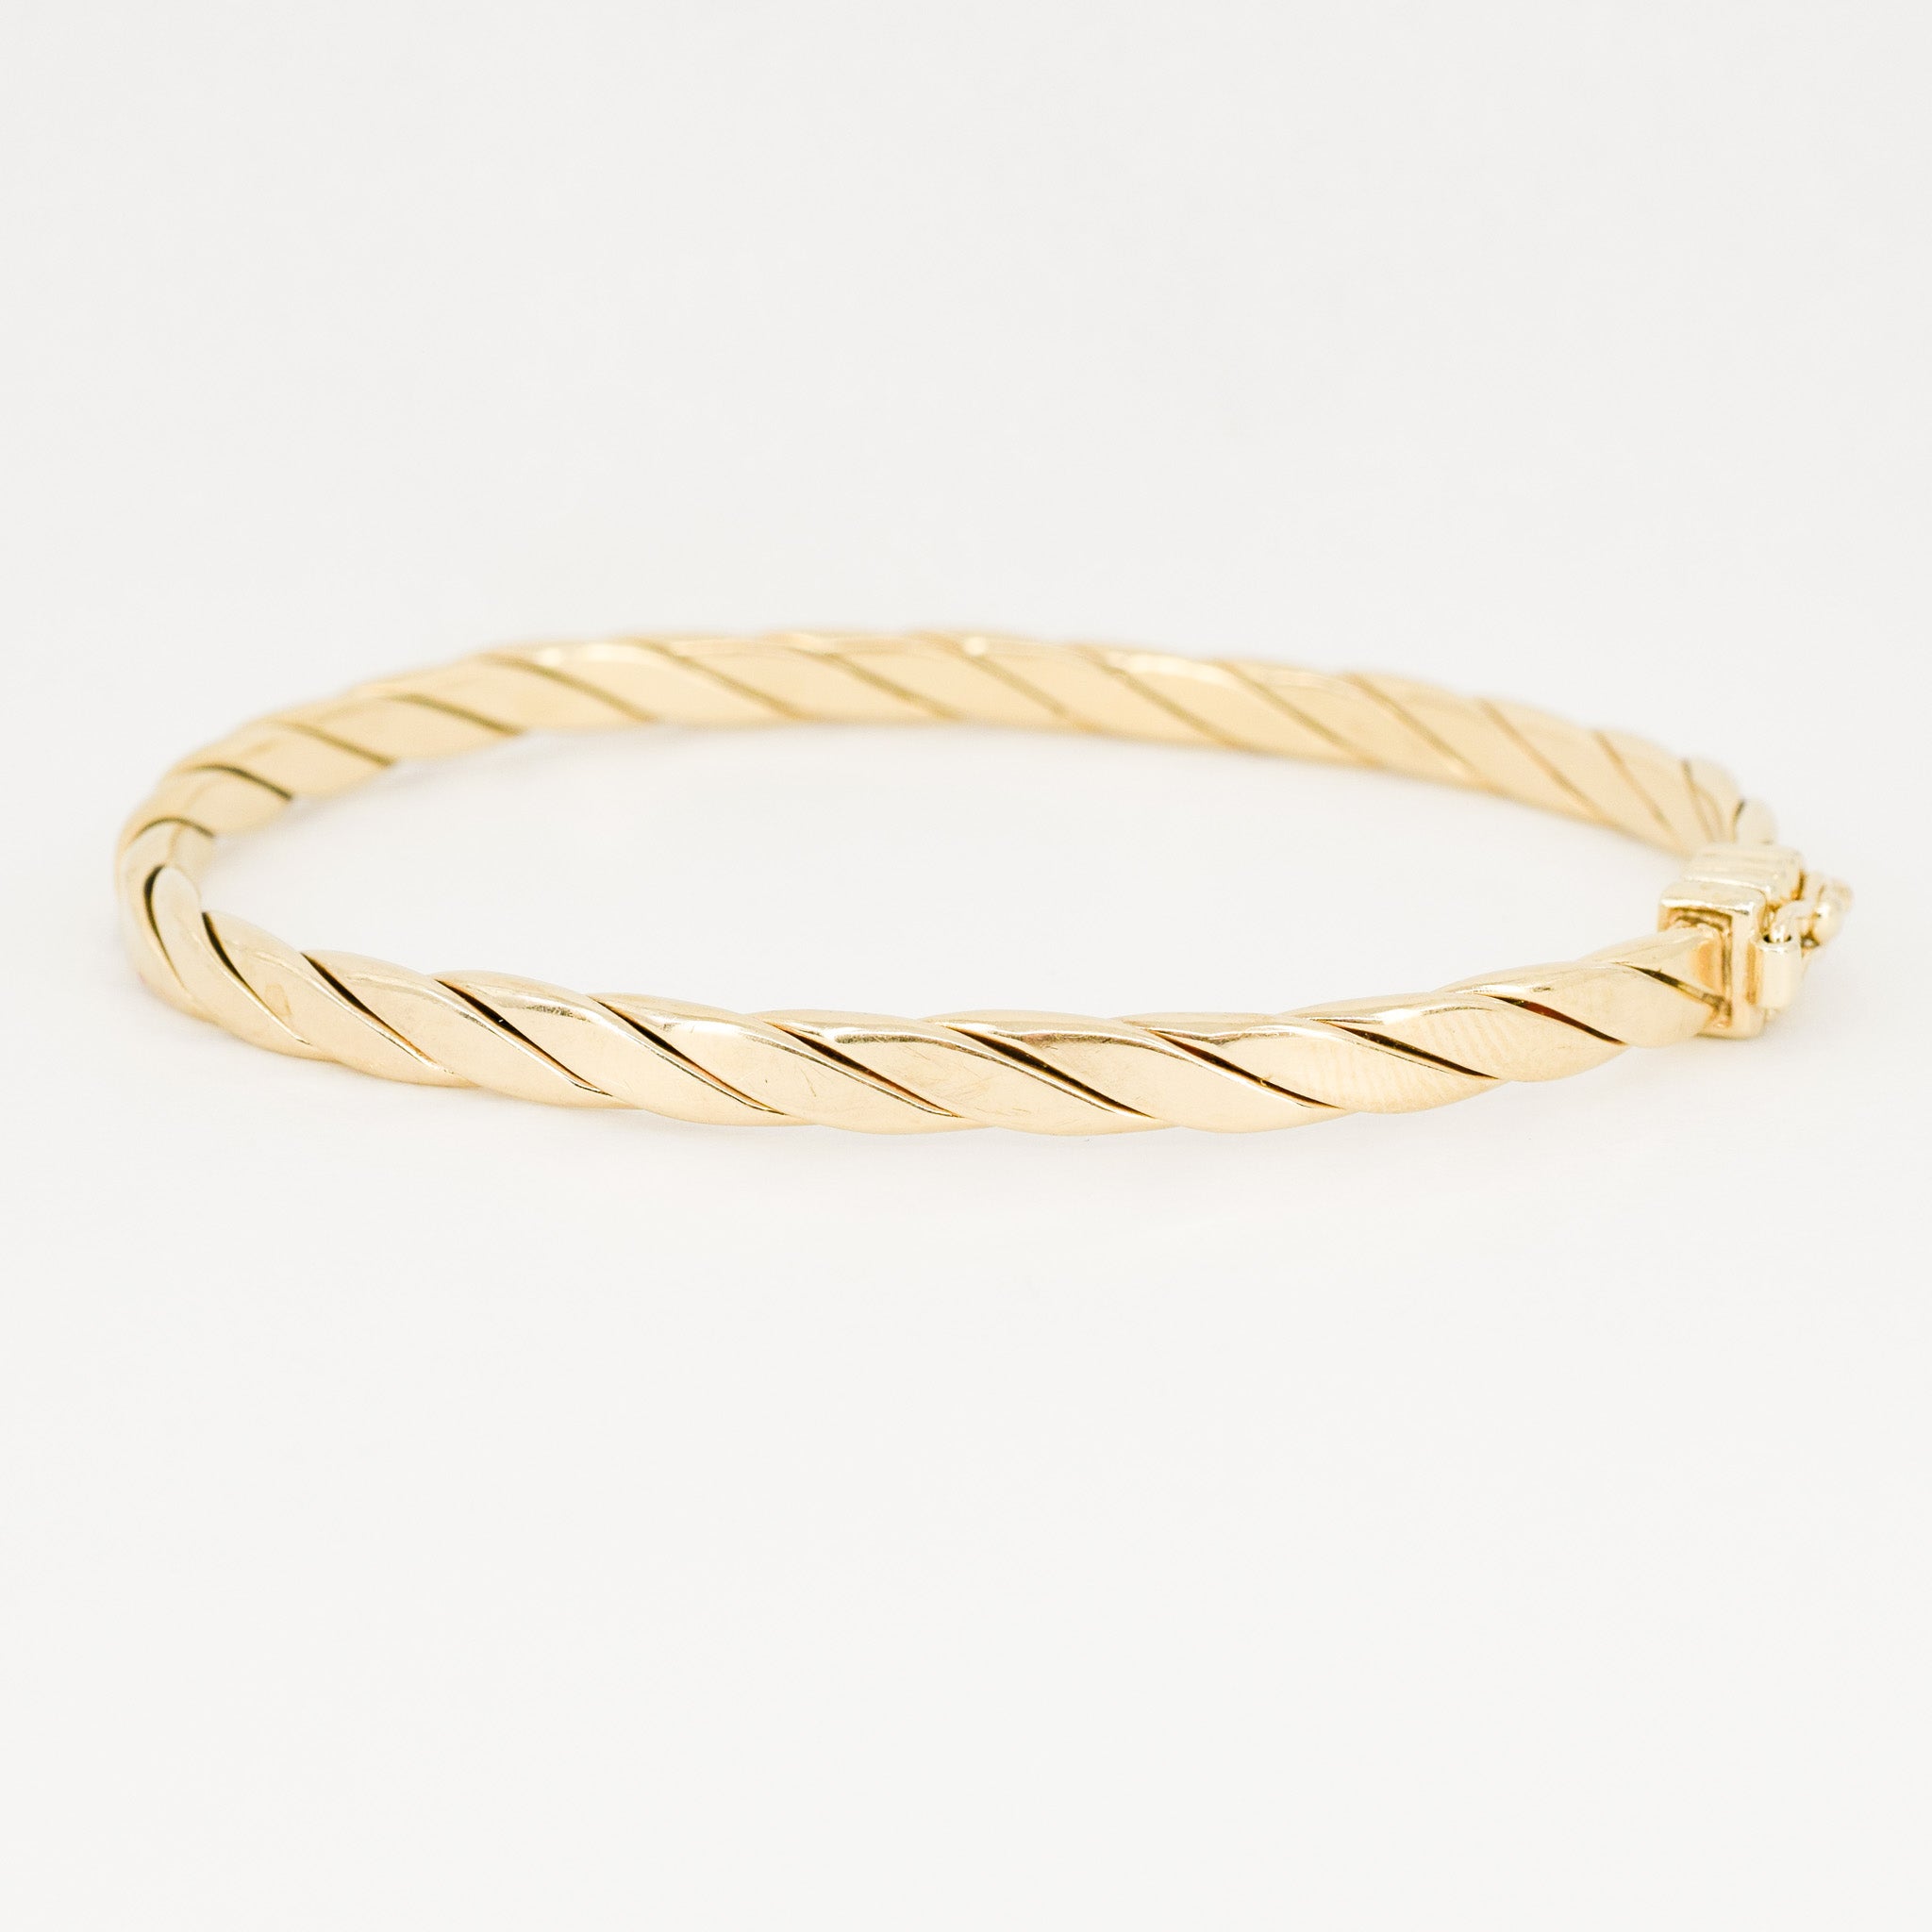 vintage gold bangle bracelet, folklor vintage jewelry canada